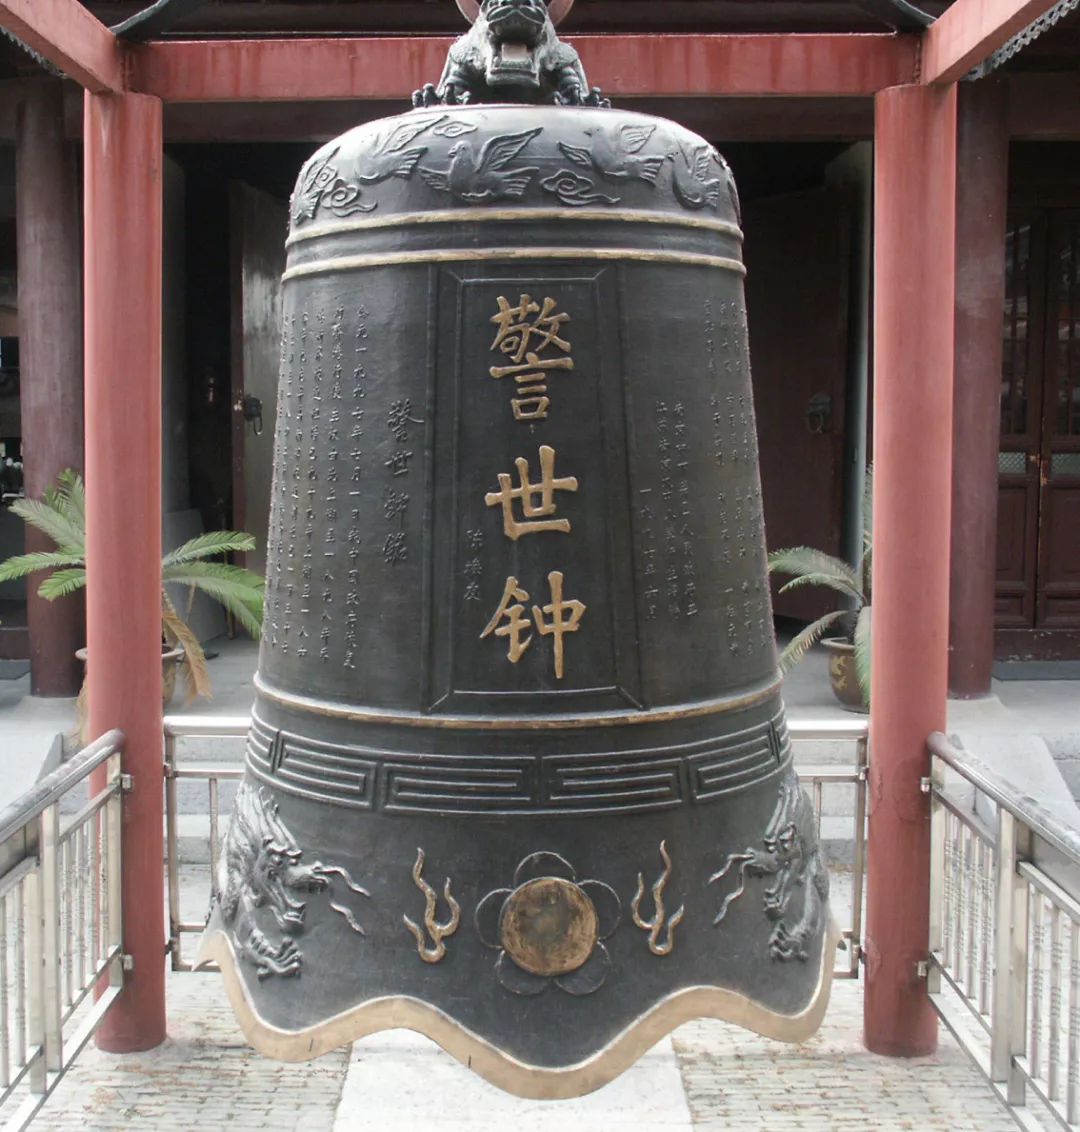 新铸造的警世钟凝聚了南京人民的情感和心血,大钟造型沉稳端庄,色泽